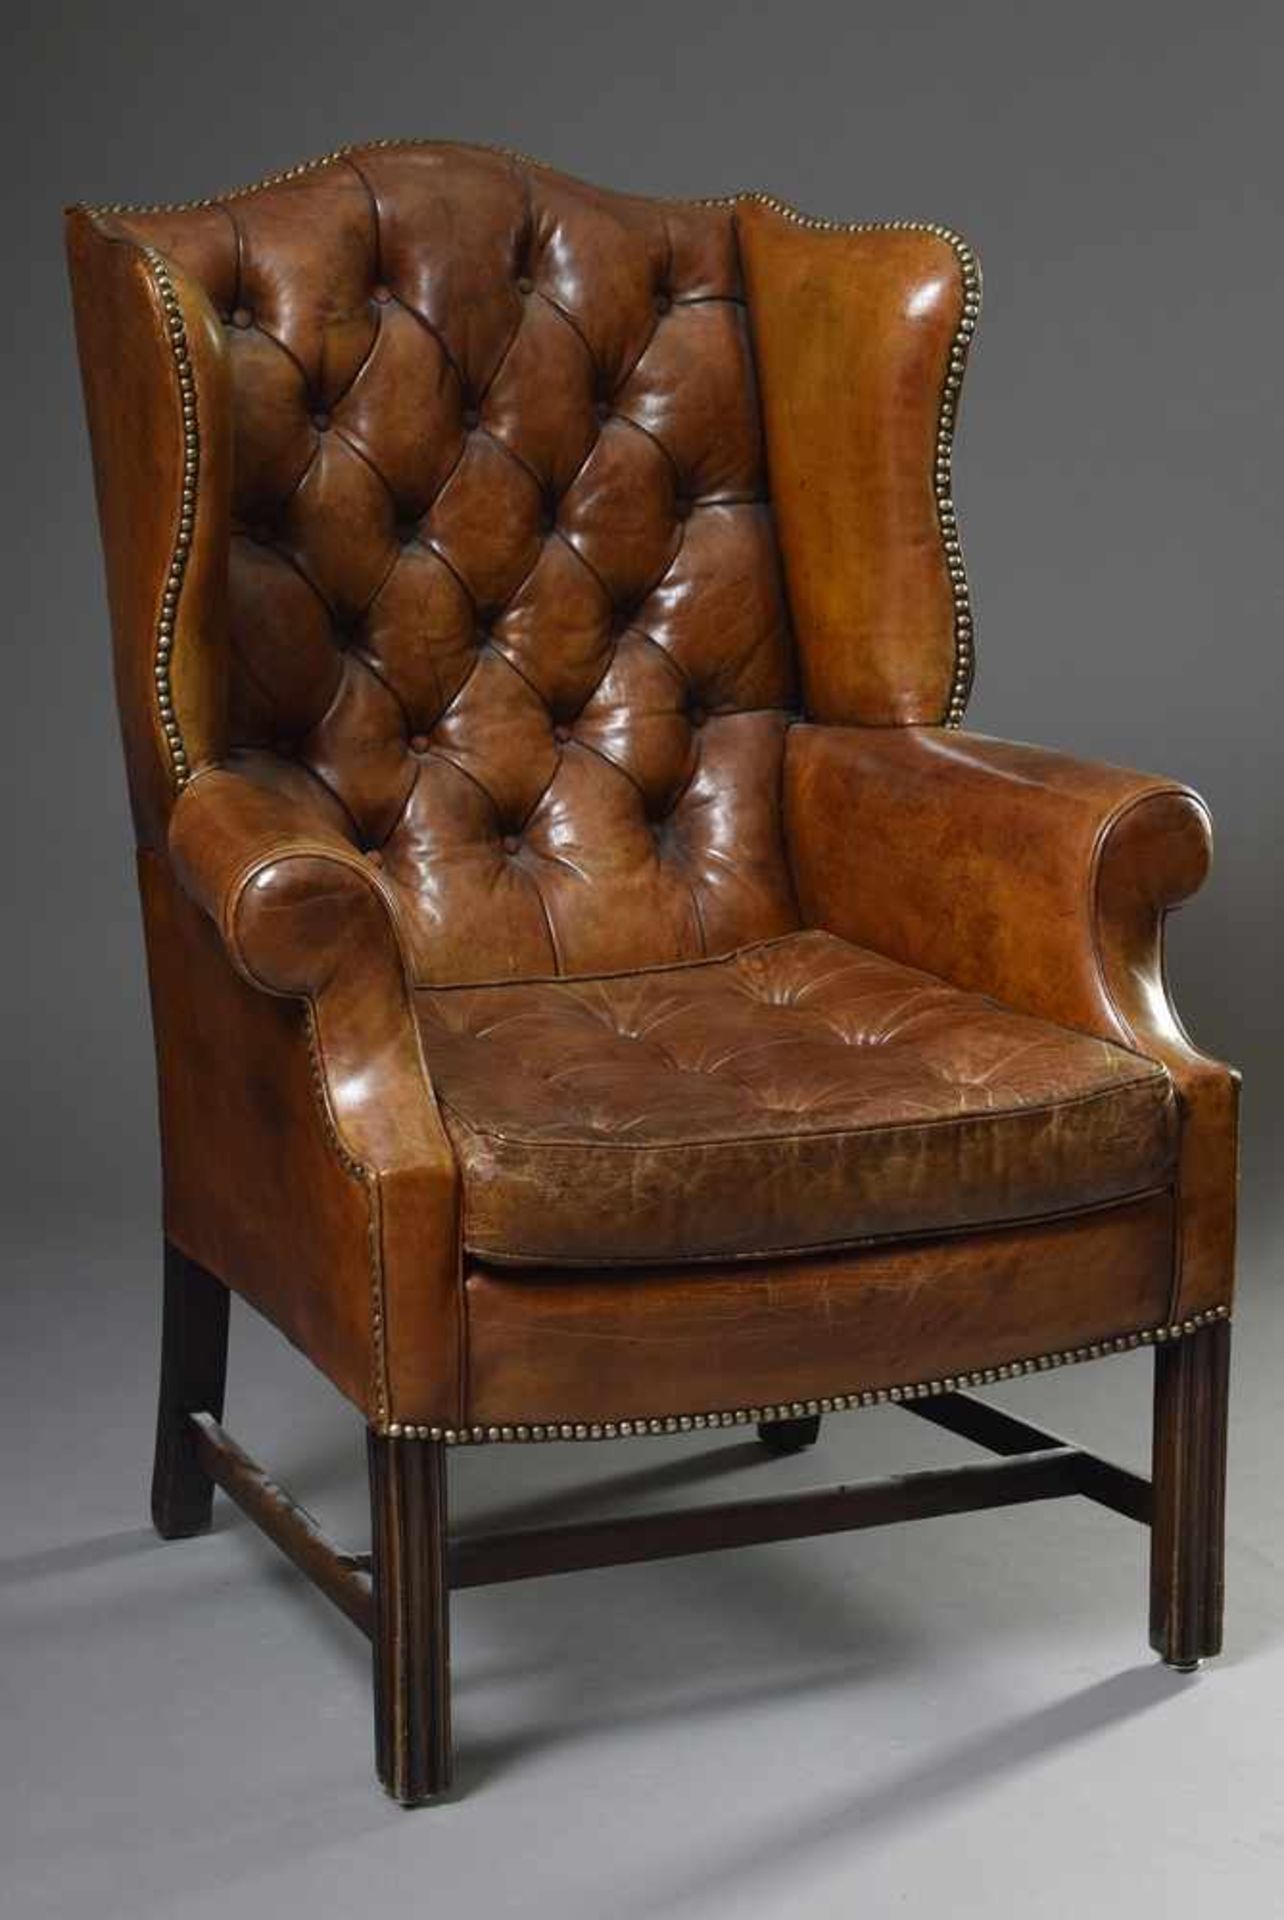 Chesterfield Ohrensessel mit brauen Lederbezug, H. 46/100cmChesterfield wing chair with brown - Bild 3 aus 4